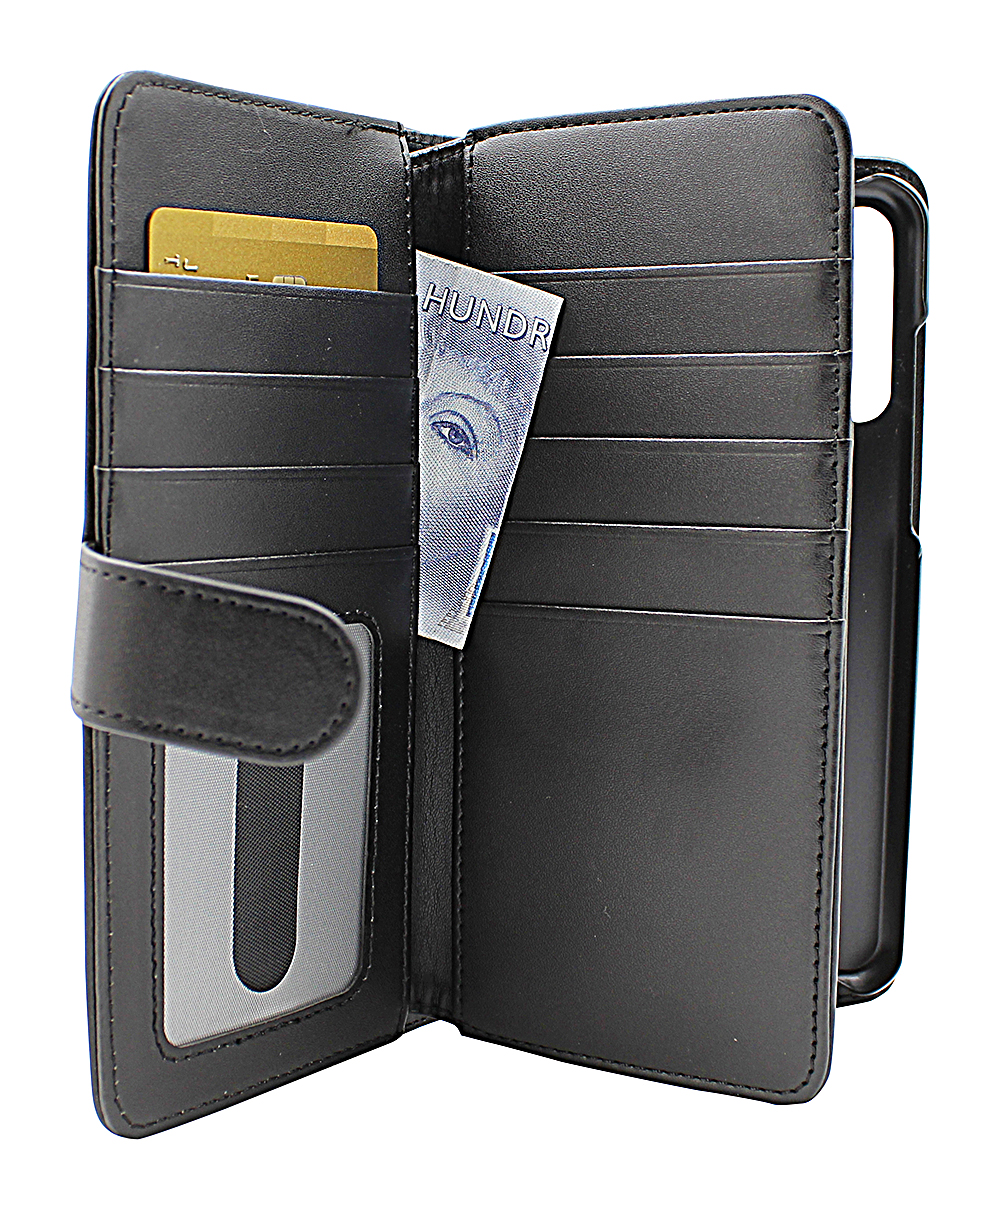 CoverInSkimblocker XL Wallet Huawei Y6p